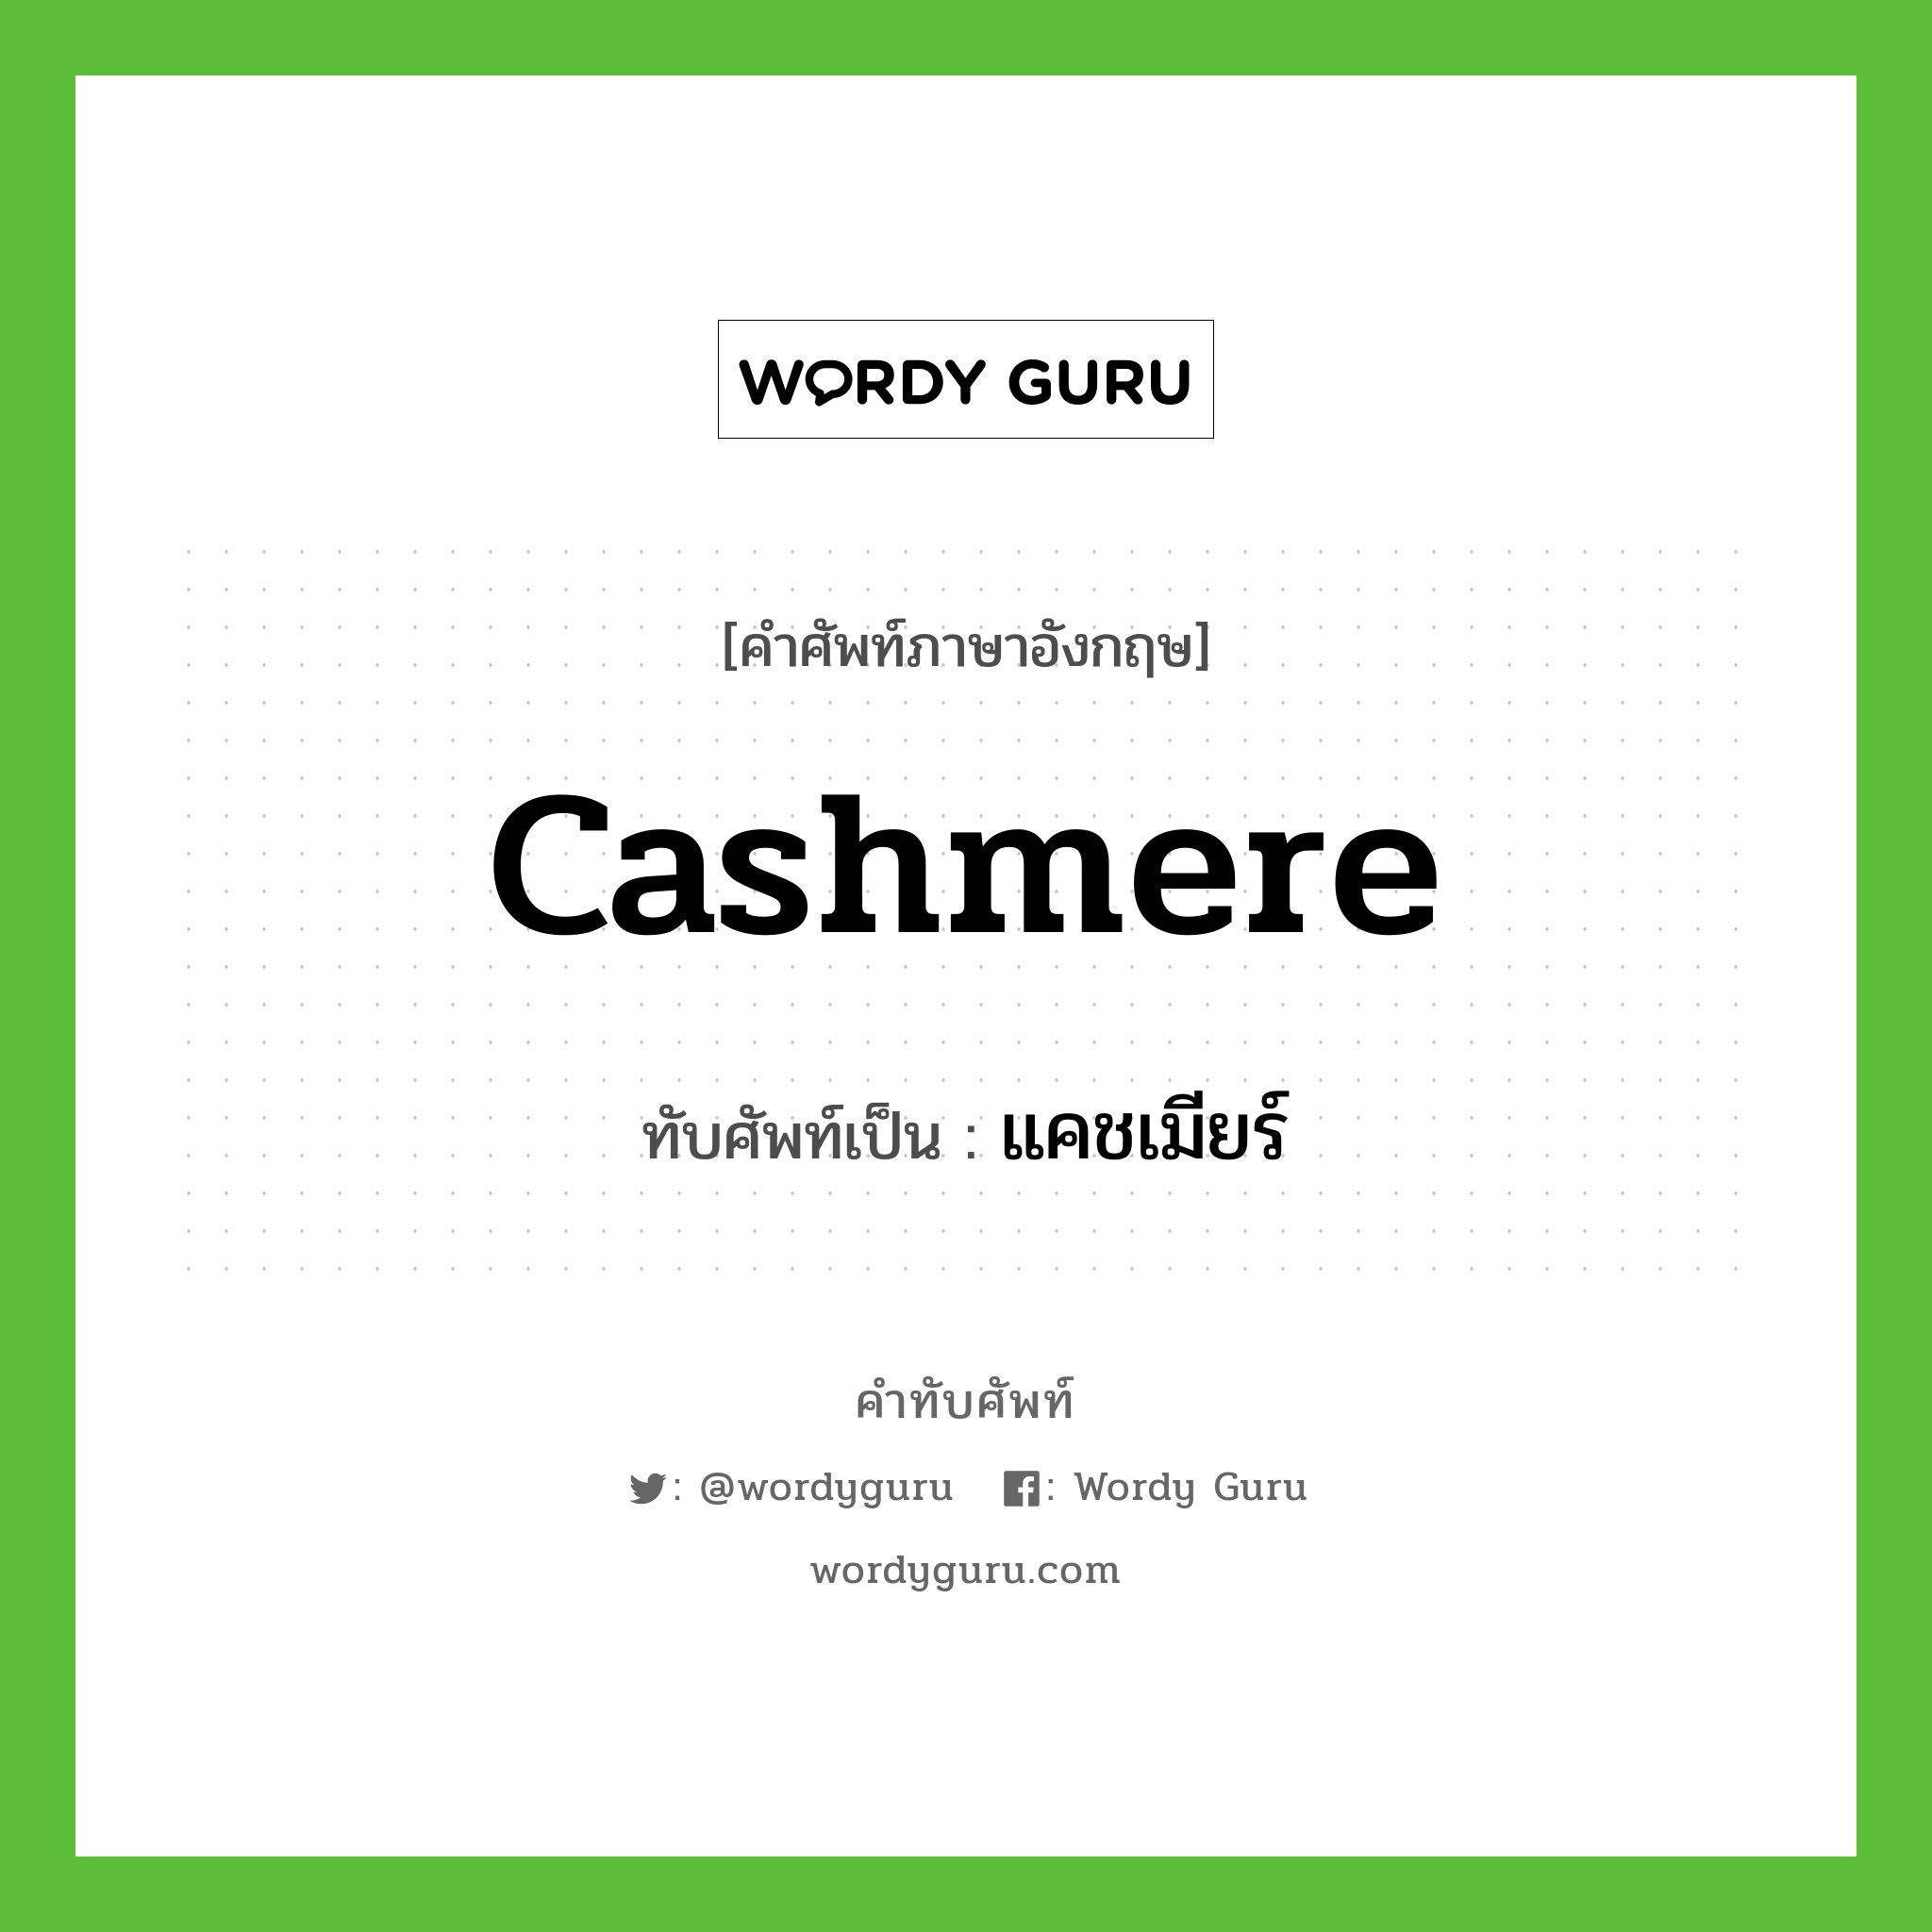 Cashmere เขียนเป็นคำไทยว่าอะไร?, คำศัพท์ภาษาอังกฤษ Cashmere ทับศัพท์เป็น แคชเมียร์